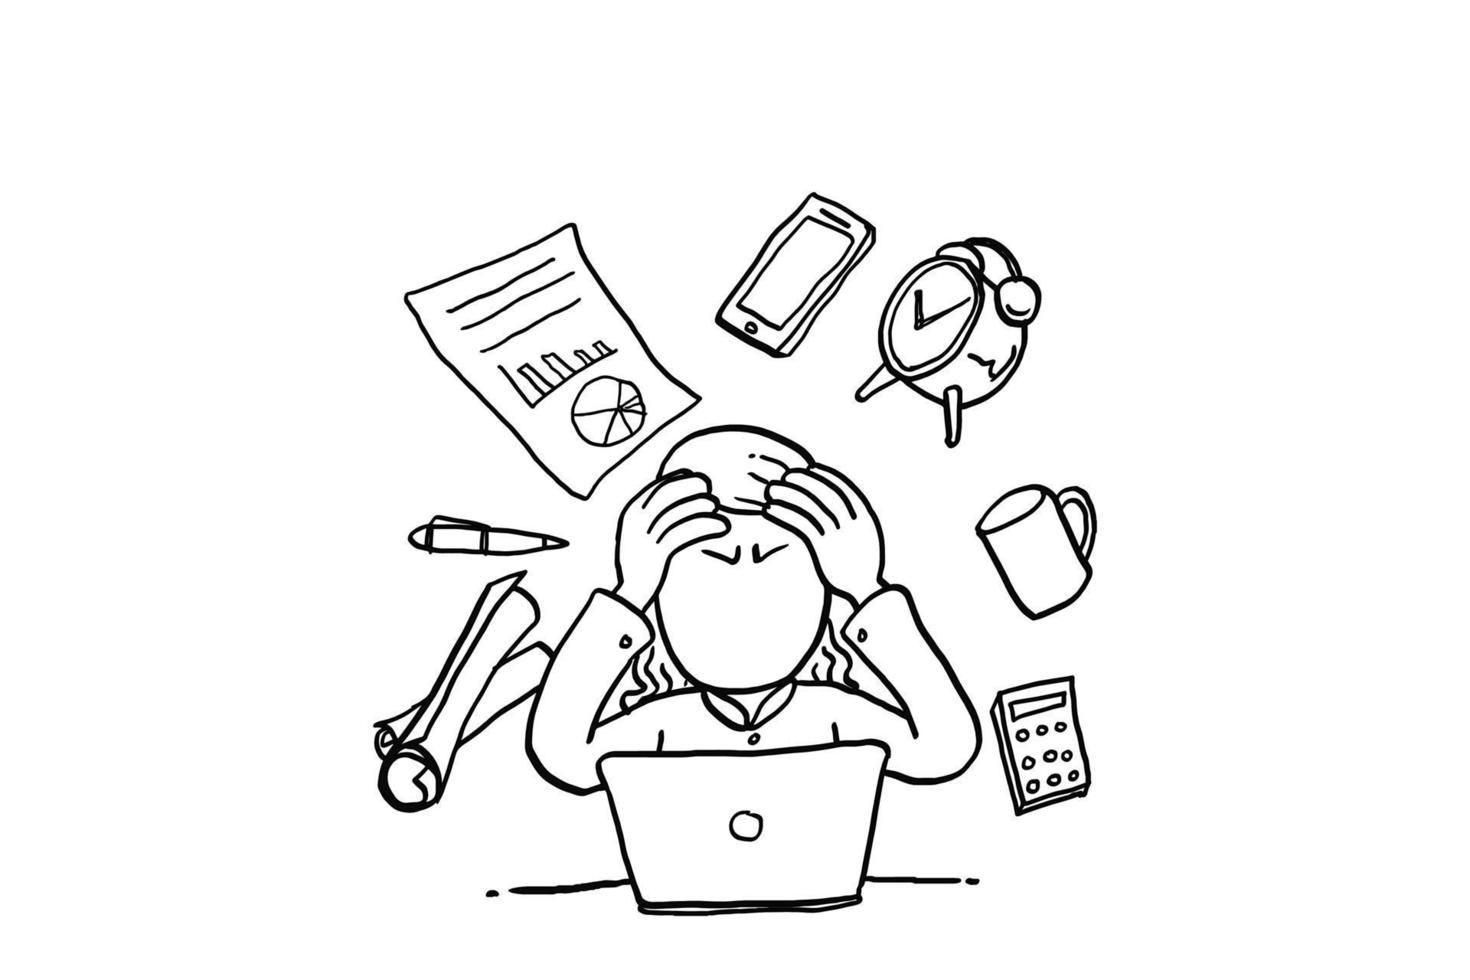 la donna d'affari ha un sacco di compiti da fare. concetto di multitasking e pensiero eccessivo. disegno dell'illustrazione di vettore del fumetto